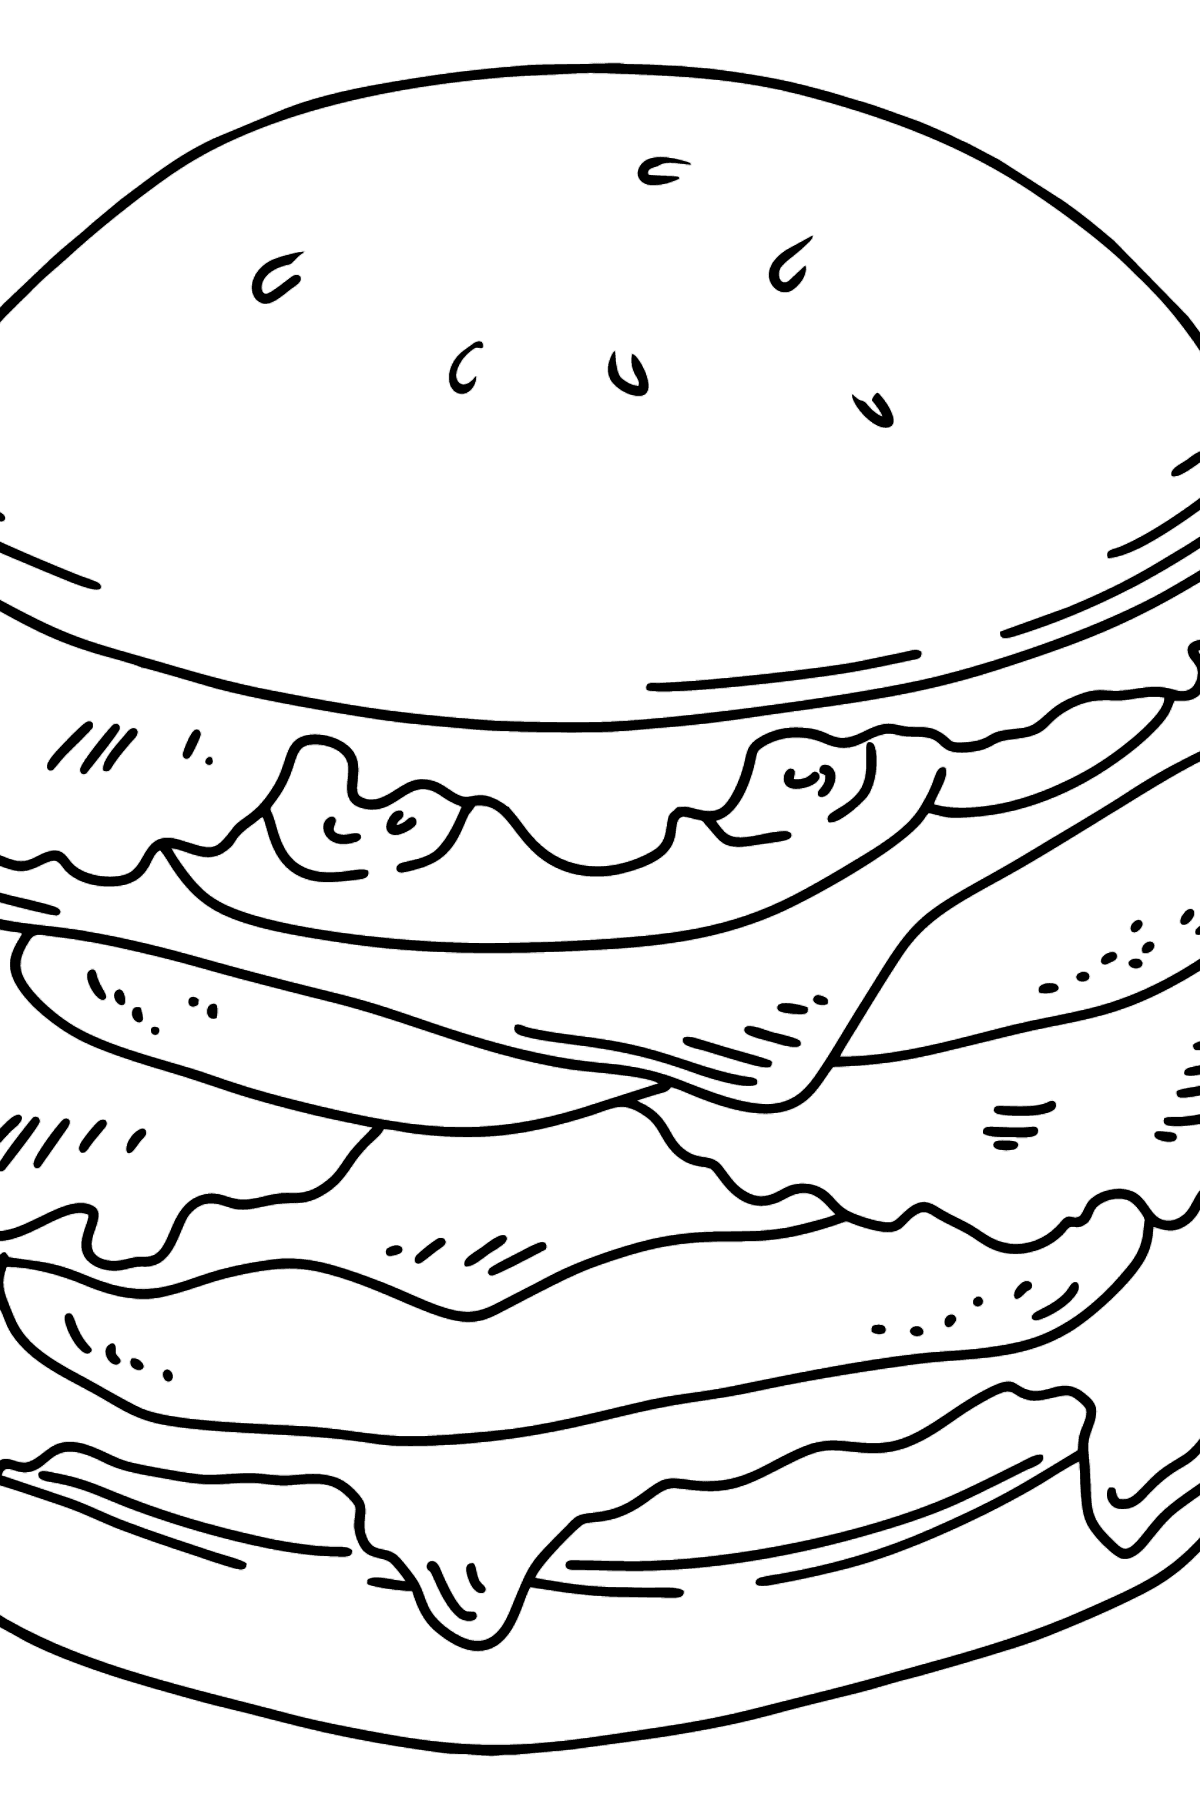 Desenho para colorir Juicy Burger - Imagens para Colorir para Crianças